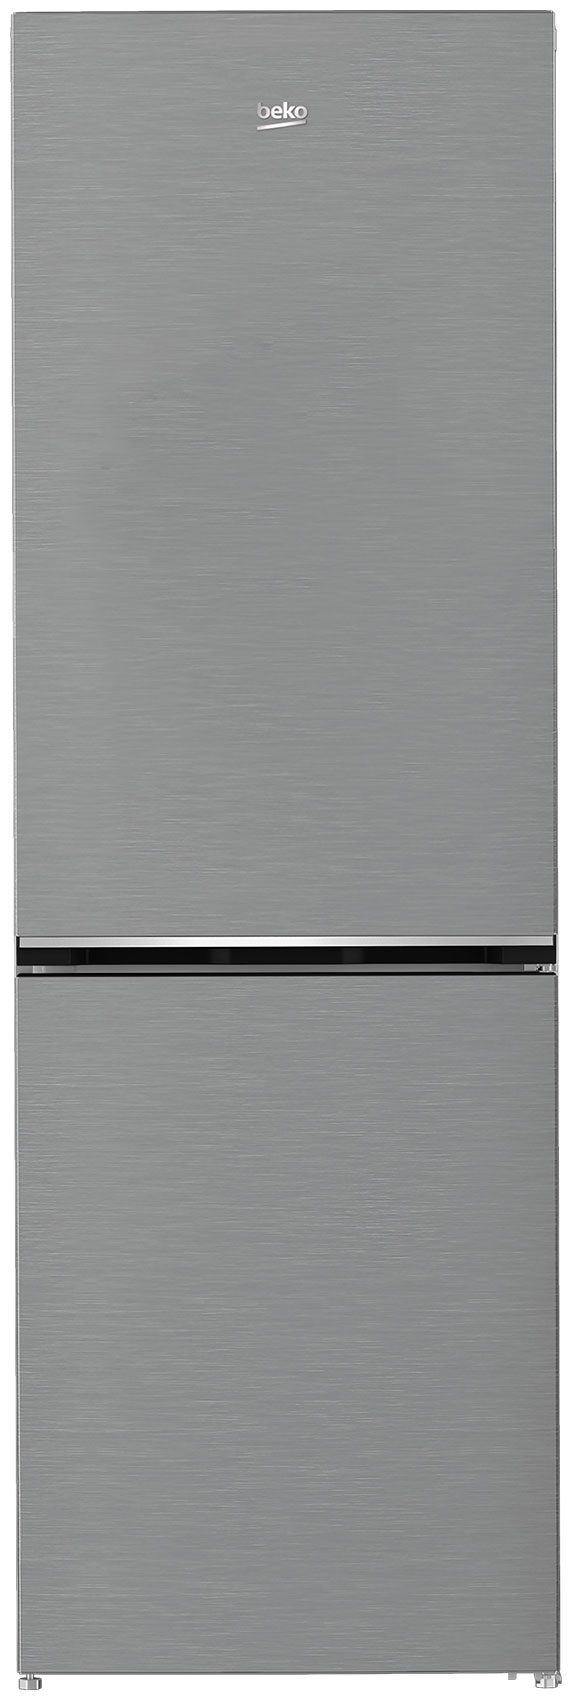 Двухкамерный холодильник Beko B1DRCNK362HX холодильник двухкамерный beko rcsk335m20w